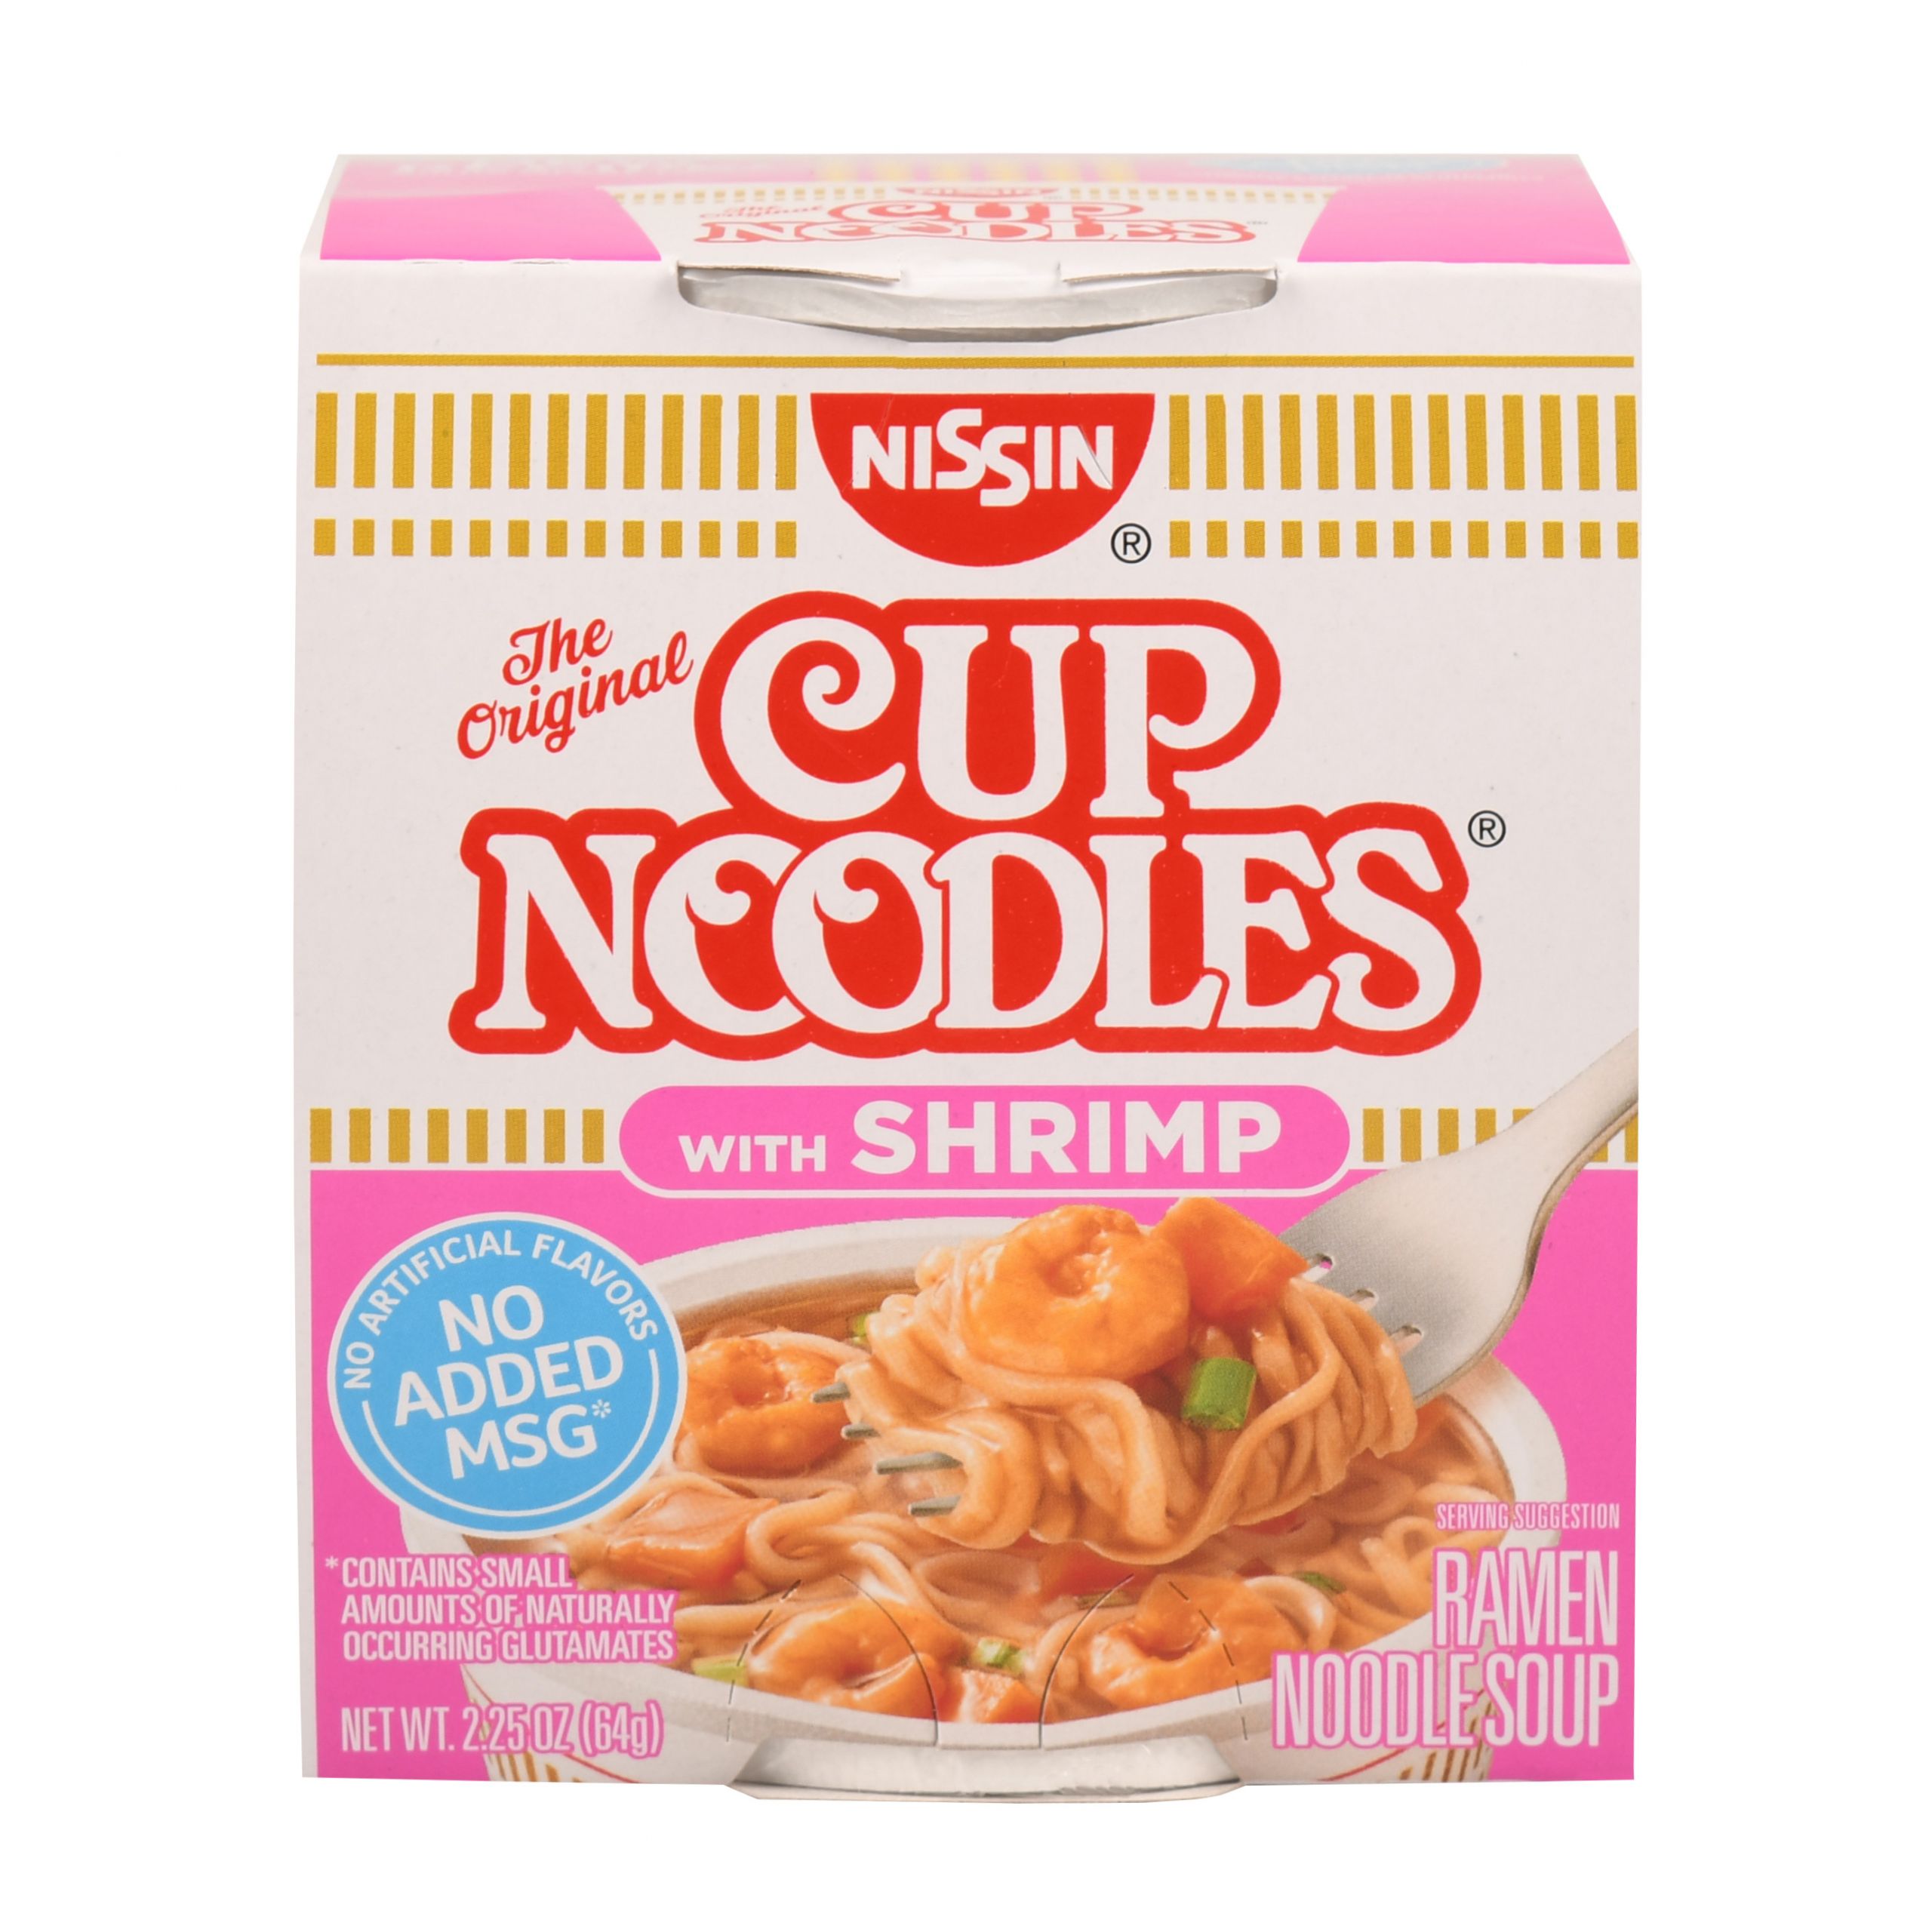 Cup Ramen Noodles Fresh Nissin Cup Noodles with Shrimp Ramen Noodle soup 2 25 Oz